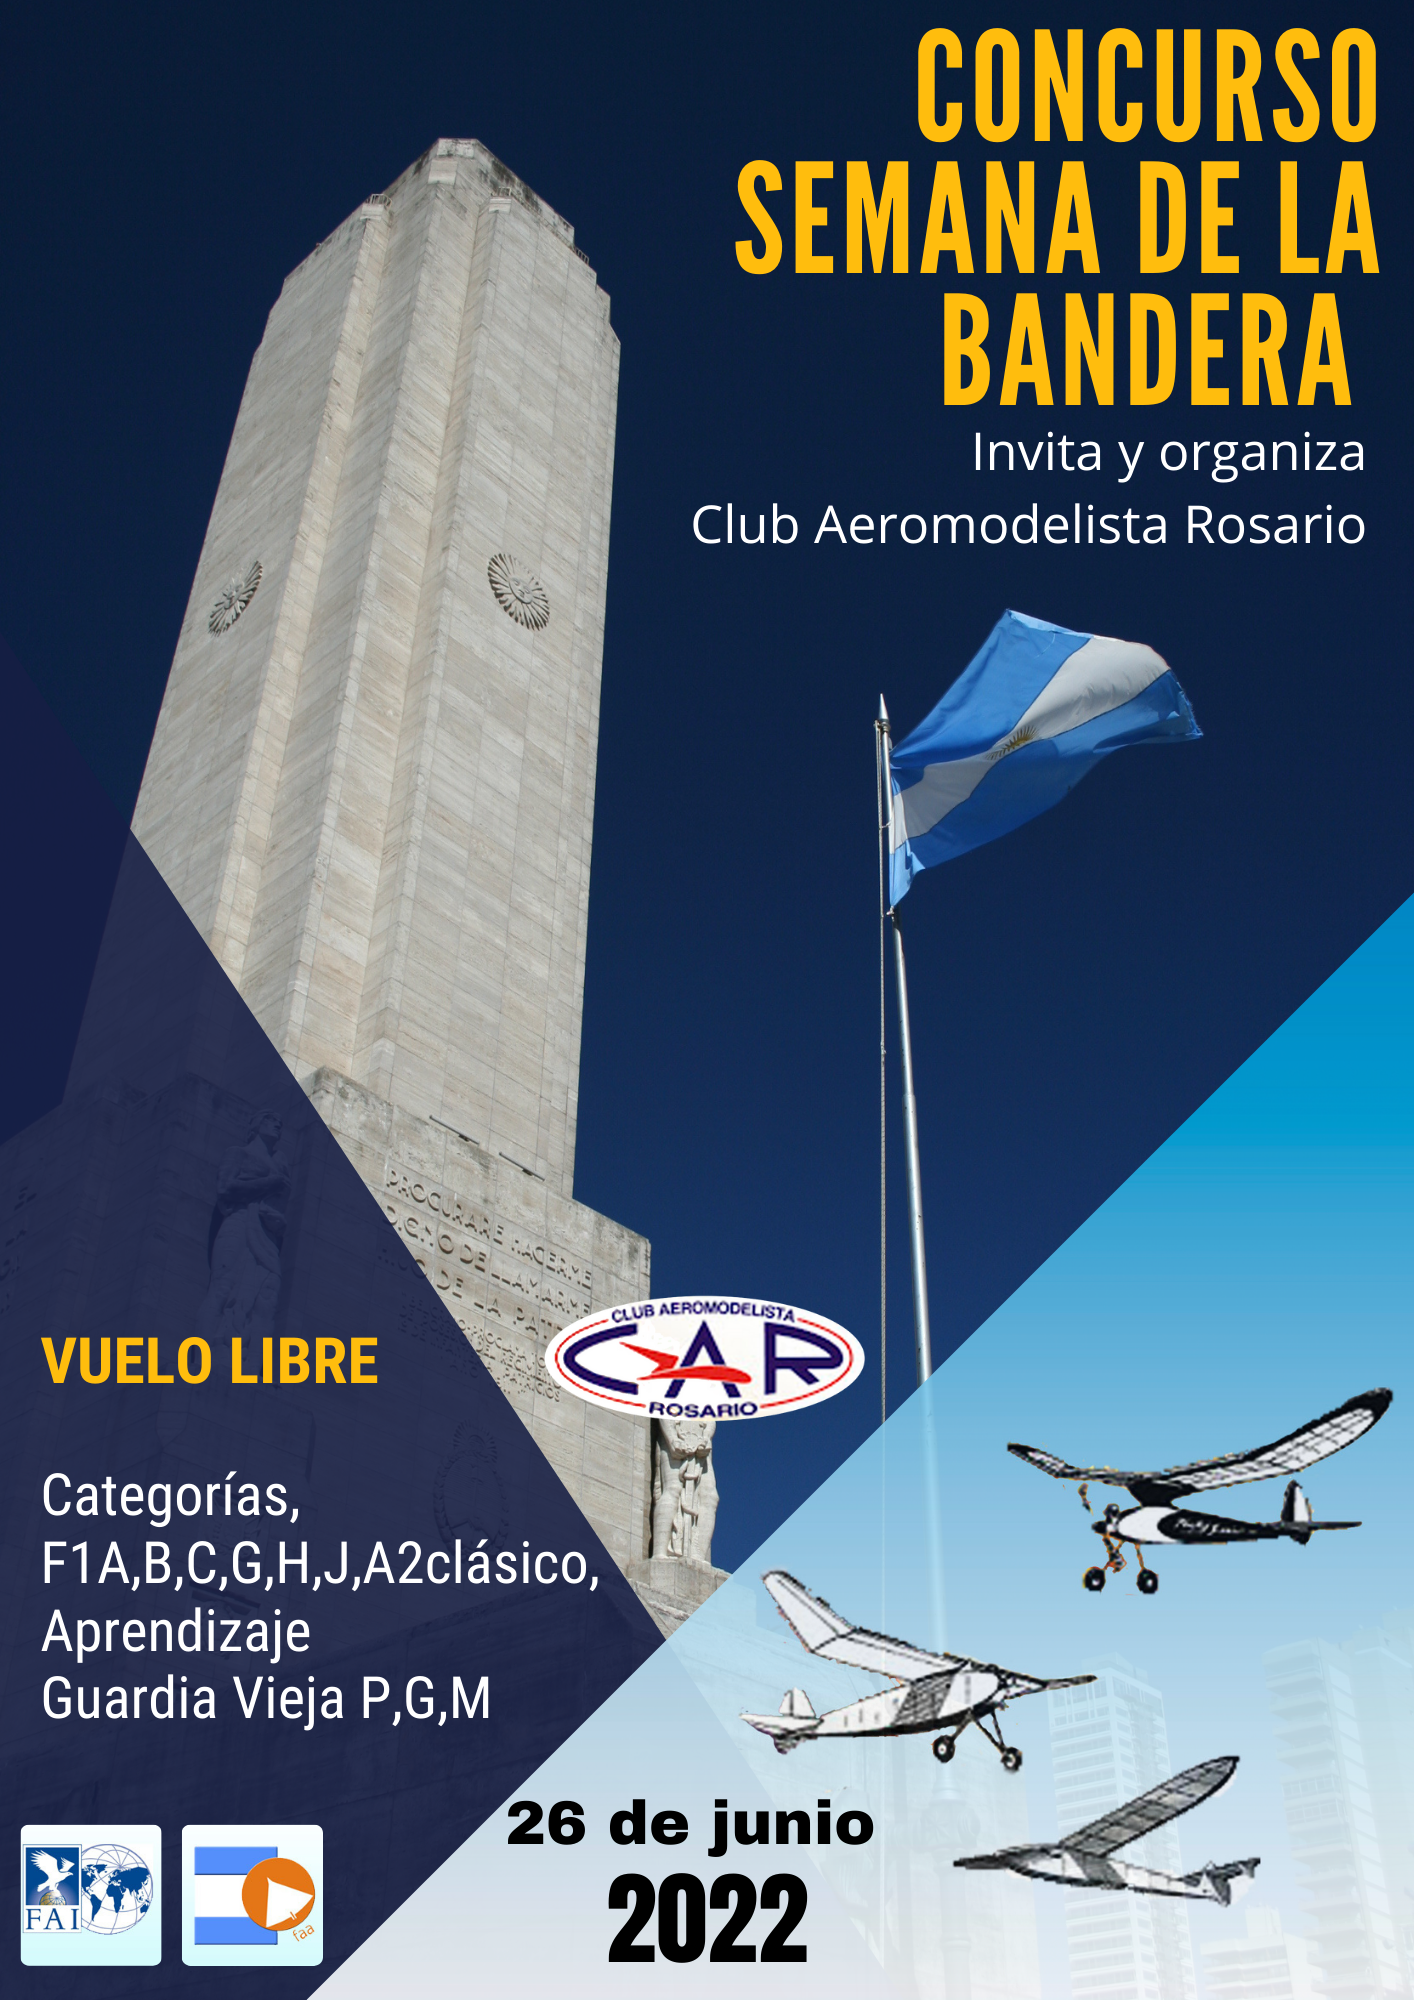 Concurso Vuelo Libre “Semana de la Bandera” – Club Aeromodelista Rosario – Rosario – Santa Fe – 26/06/2022